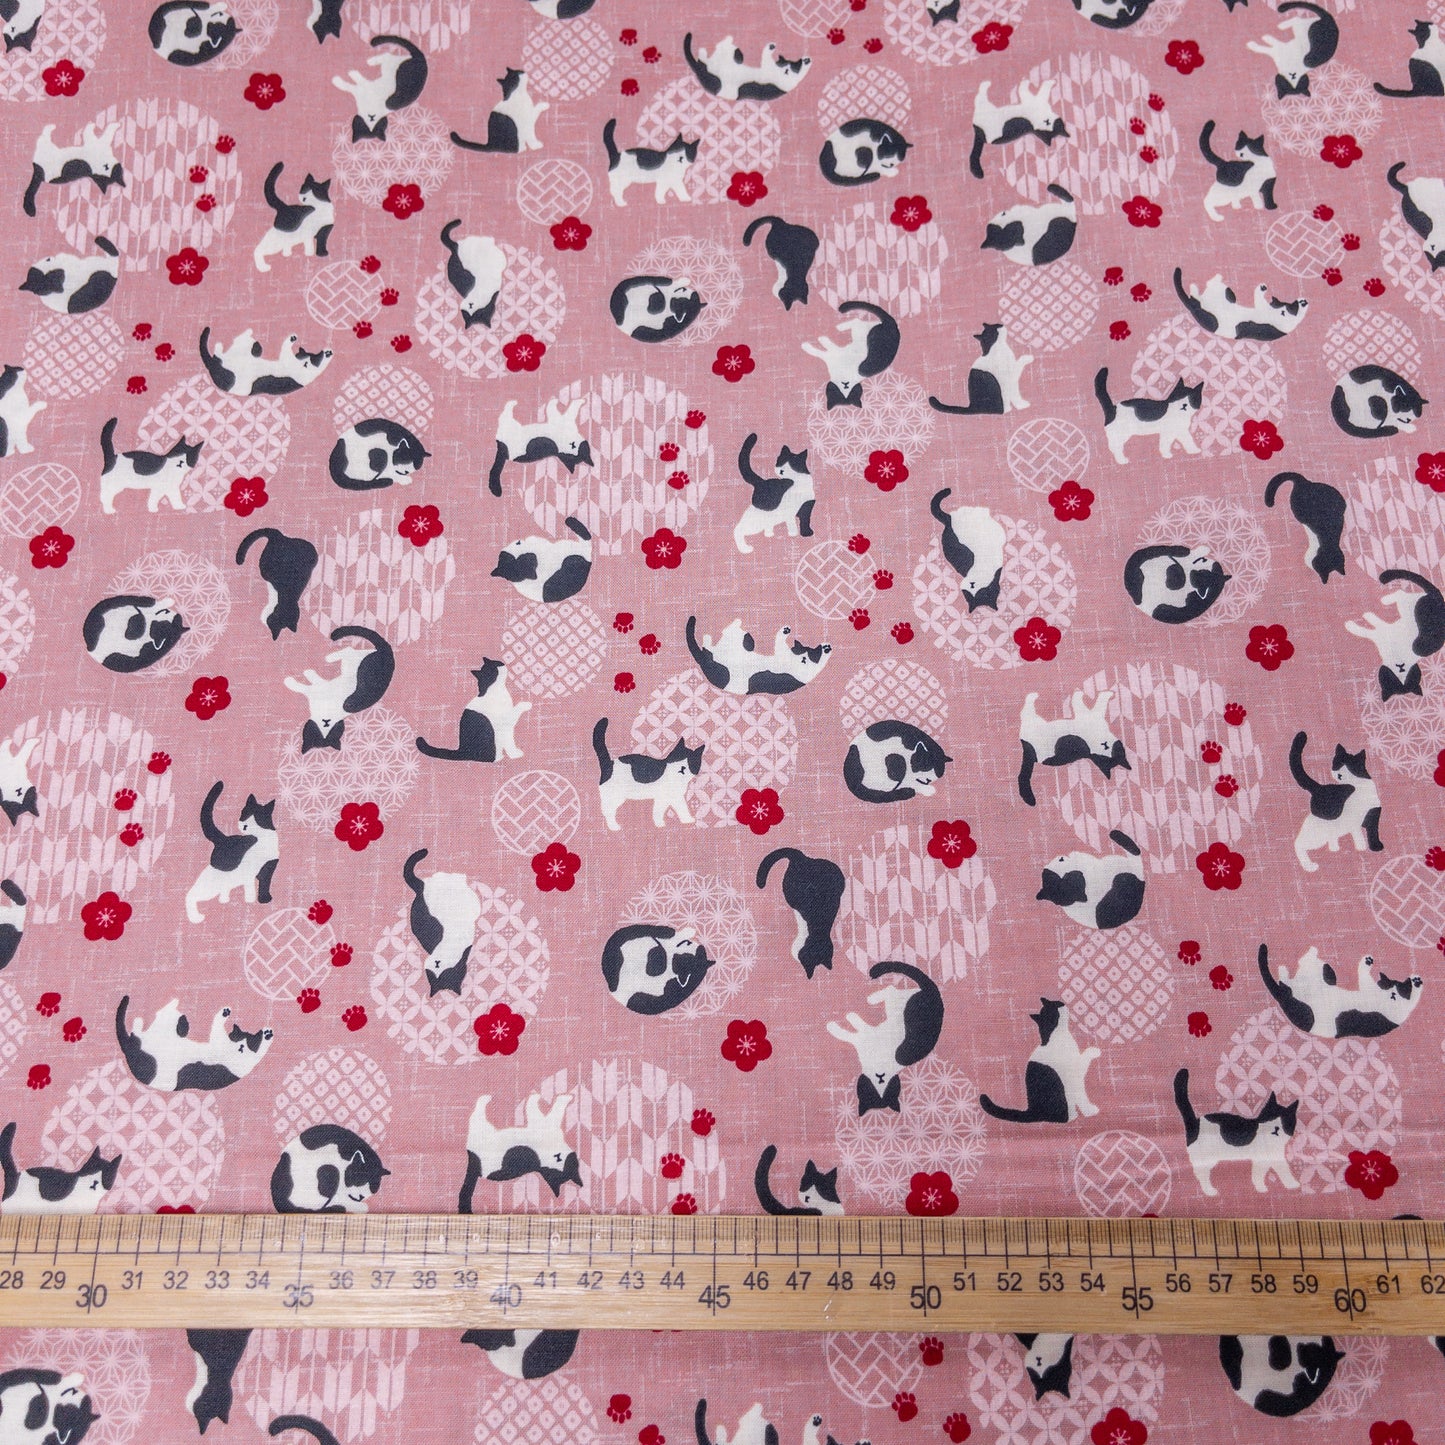 Japan | tuxedo cat sakura 黑白貓櫻花 | cotton printed sheeting 純棉